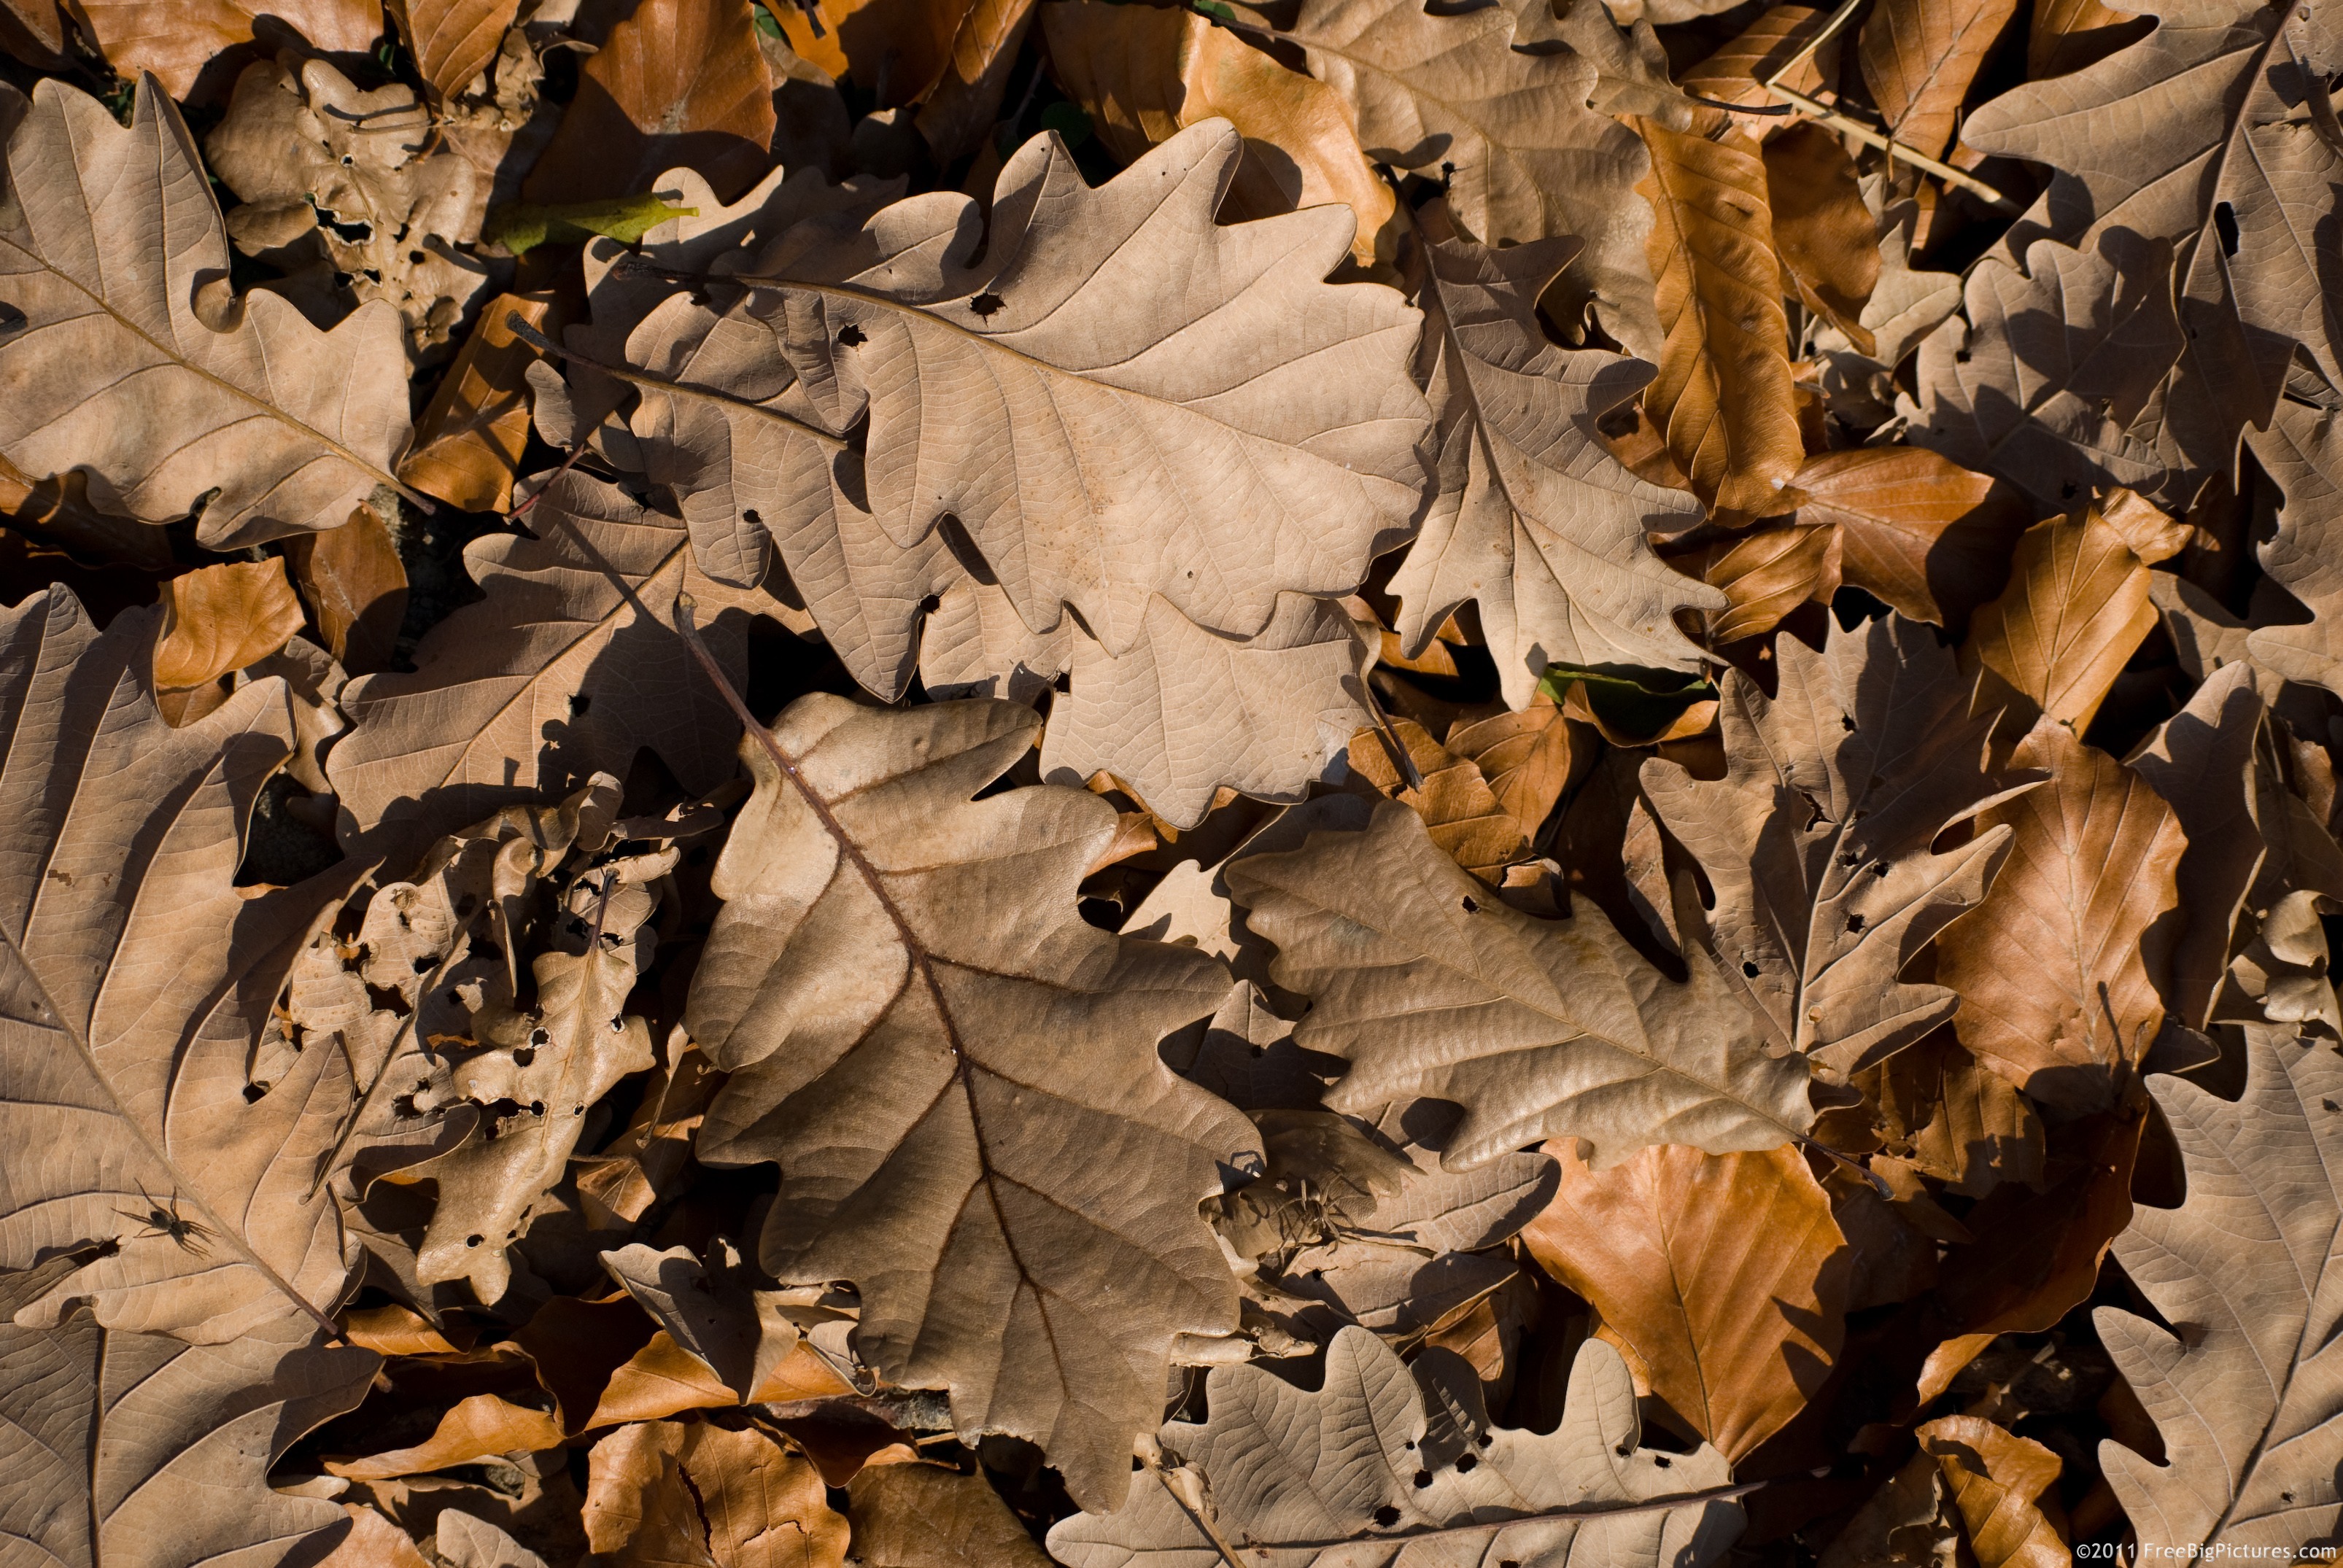 Dry oak leaves, recently fallen, in November